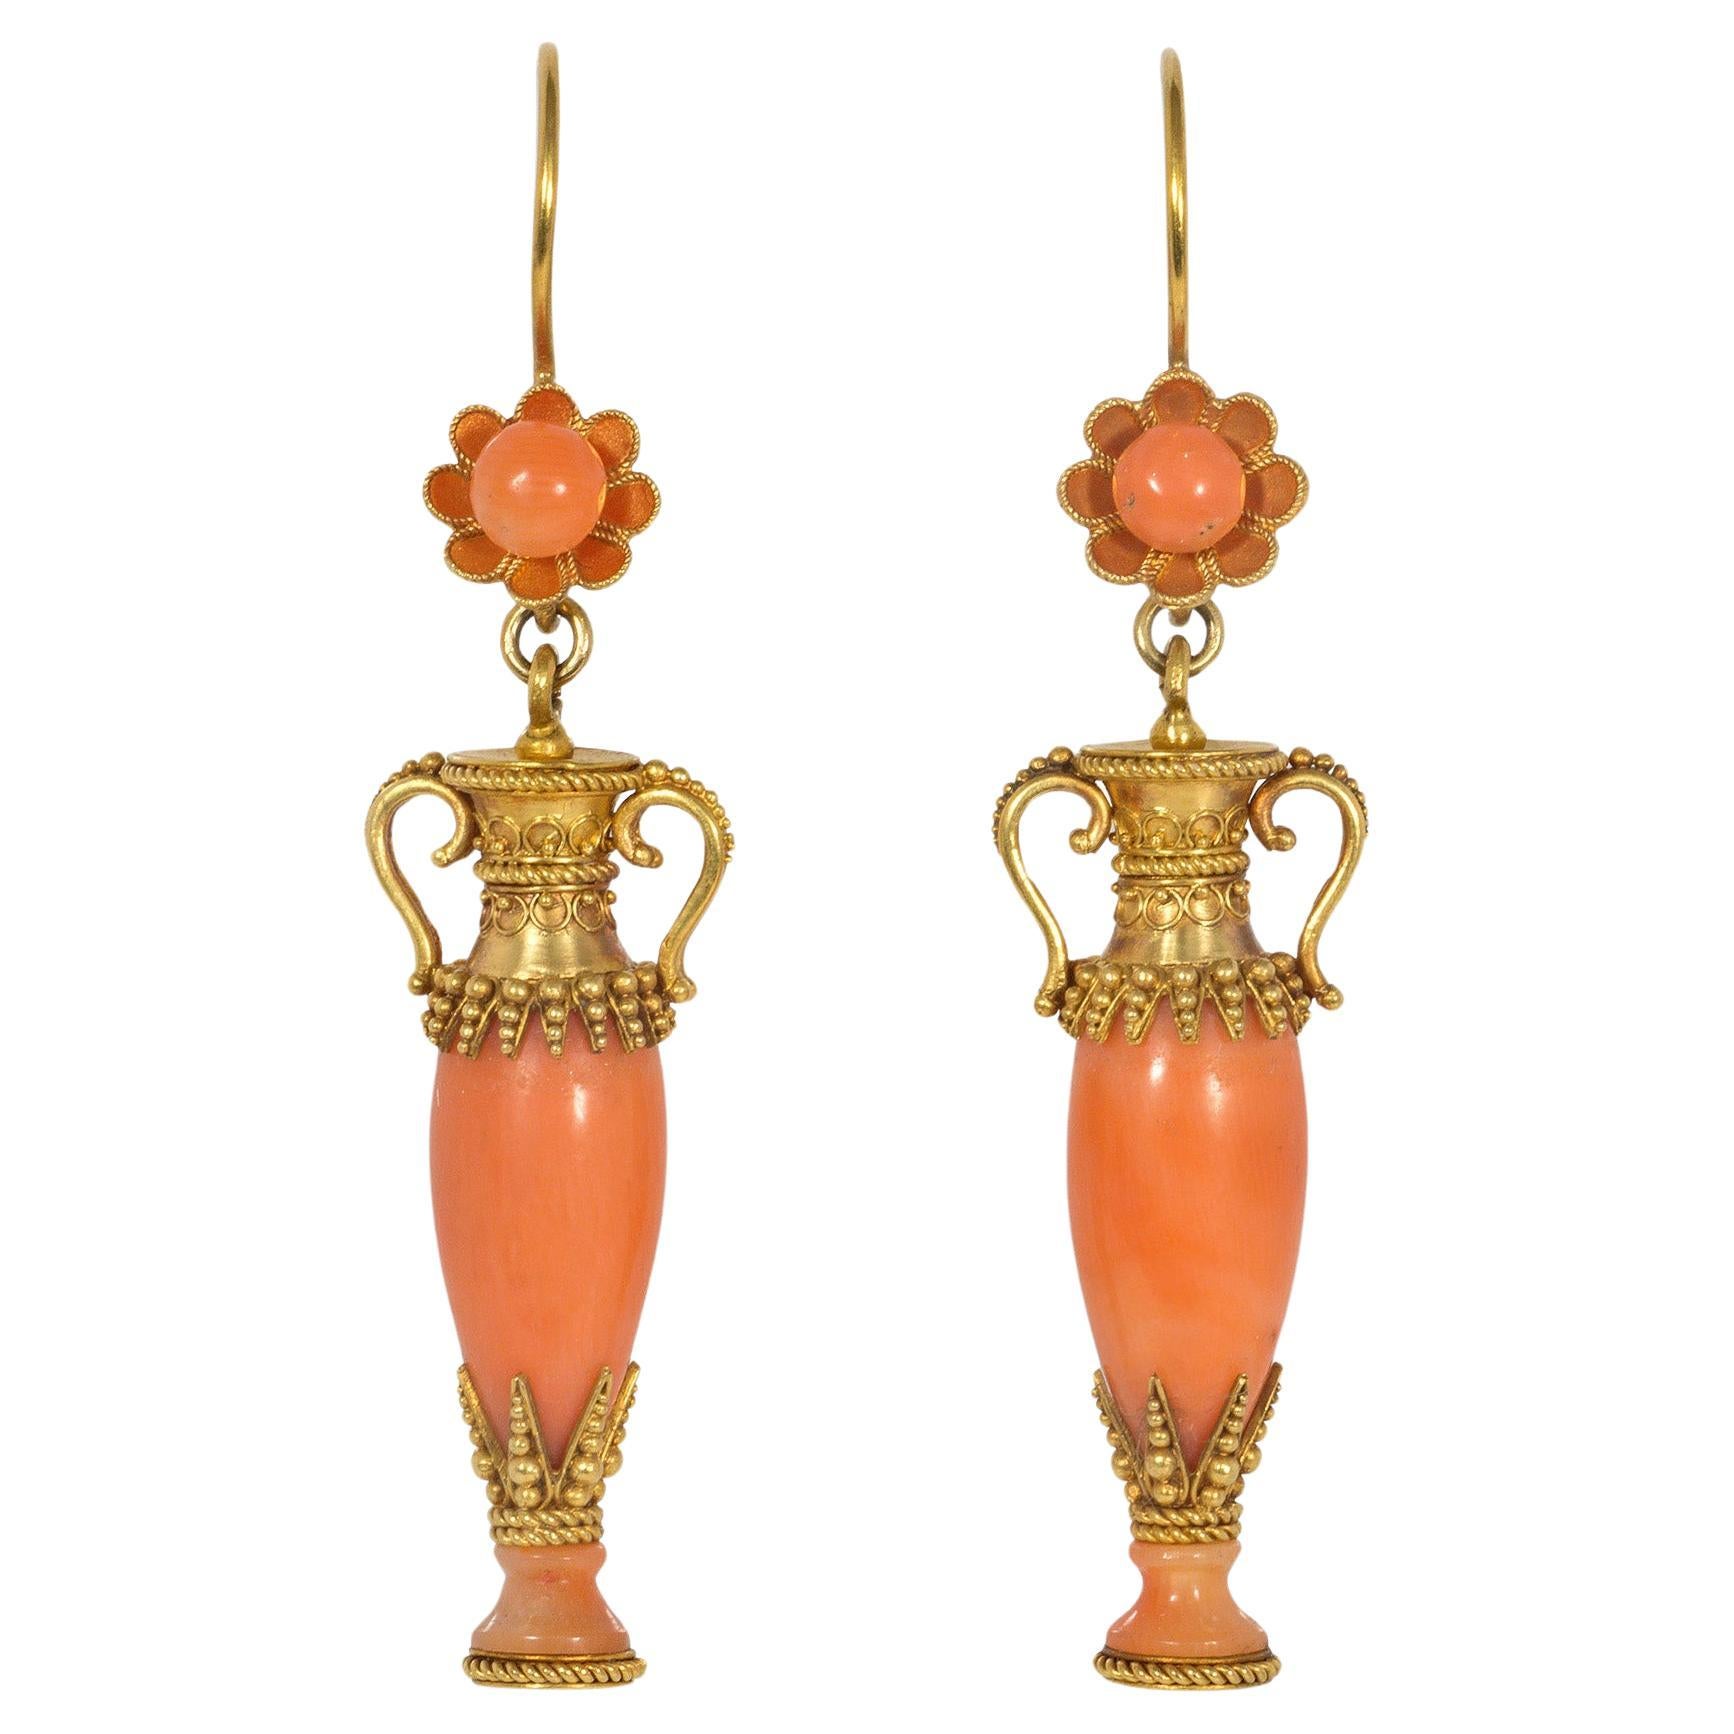 Boucles d'oreilles Antique Revival en or et corail avec pendentifs en forme d'urne